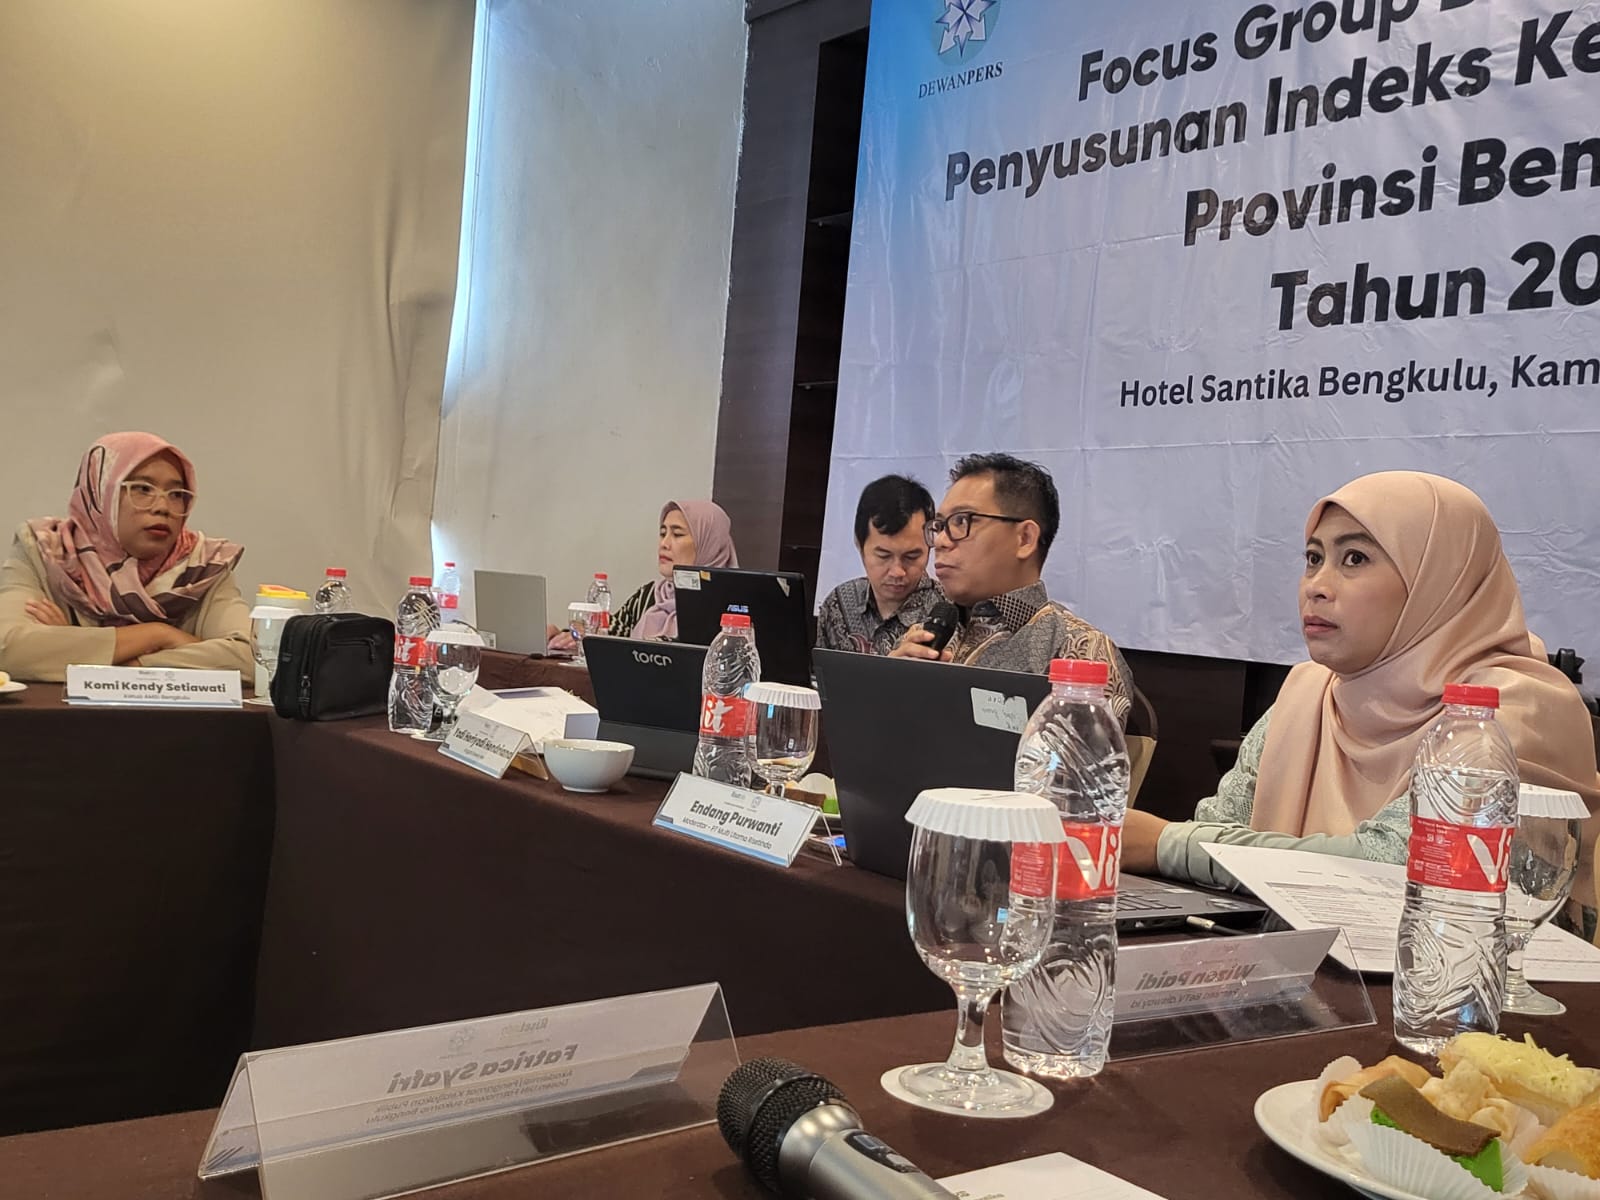 Focus Group Discussion Indeks Kemerdekaan Pers di Provinsi Bengkulu Tahun 2024